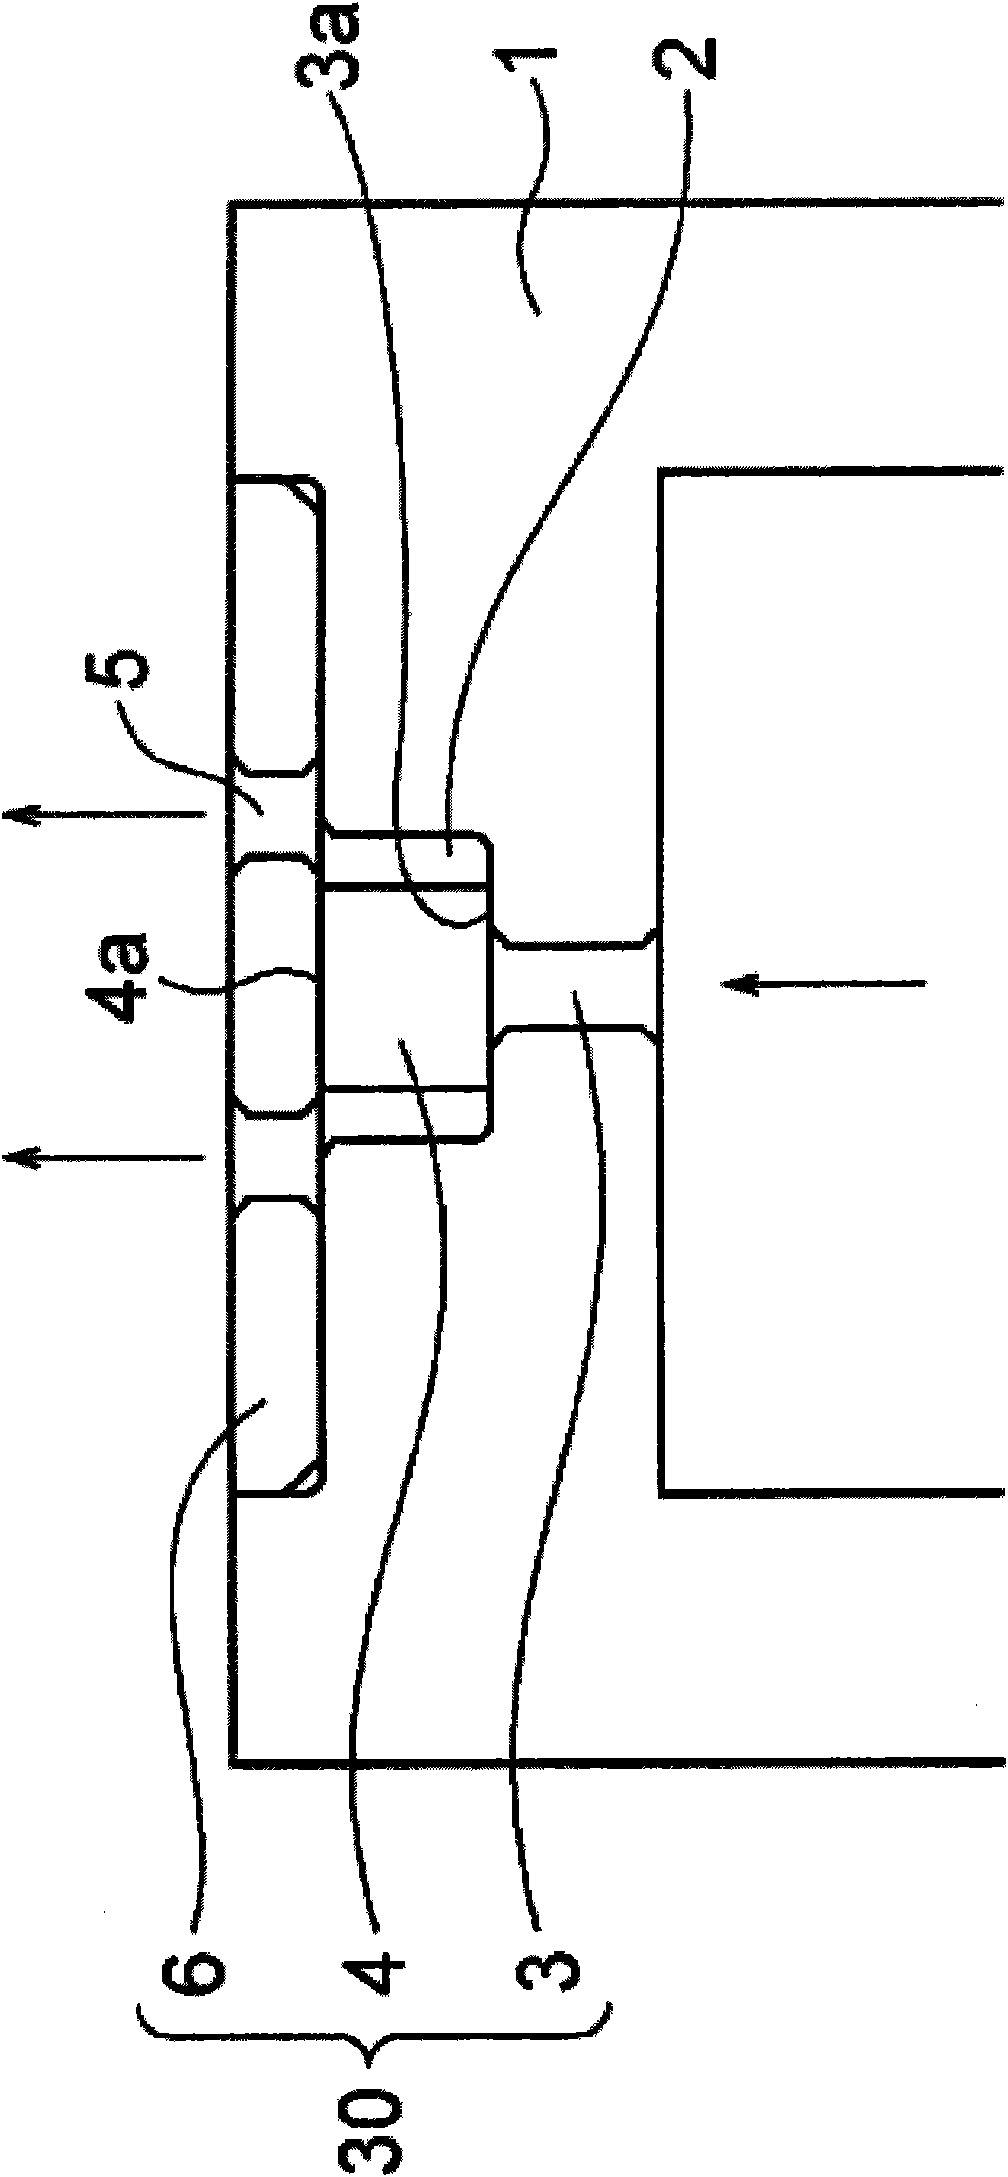 Relief valve